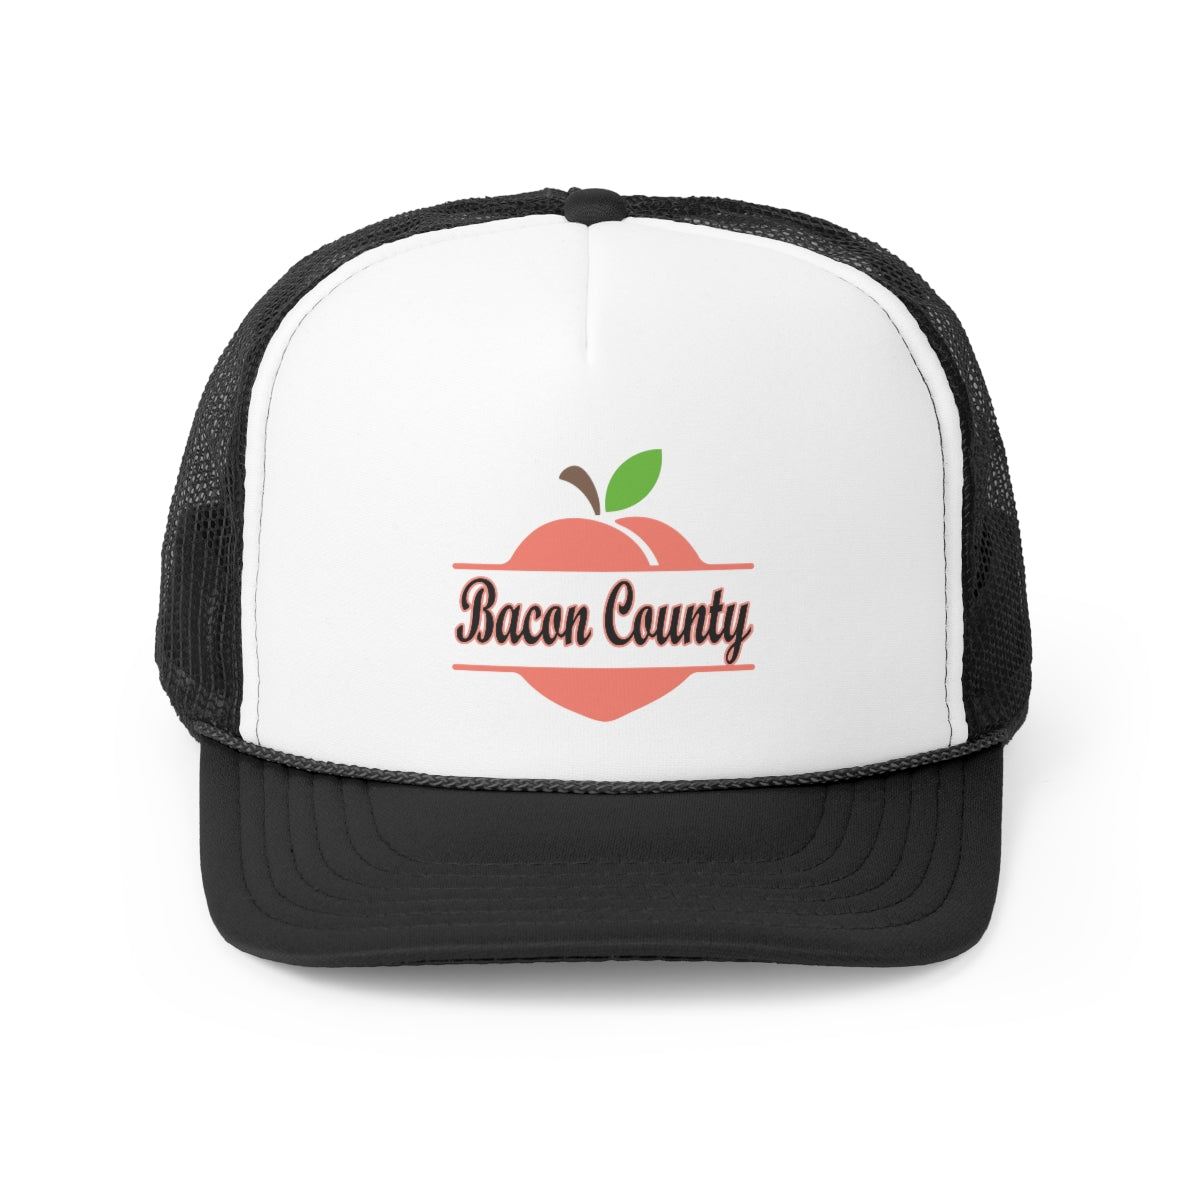 Bacon County Georgia Trucker Cap